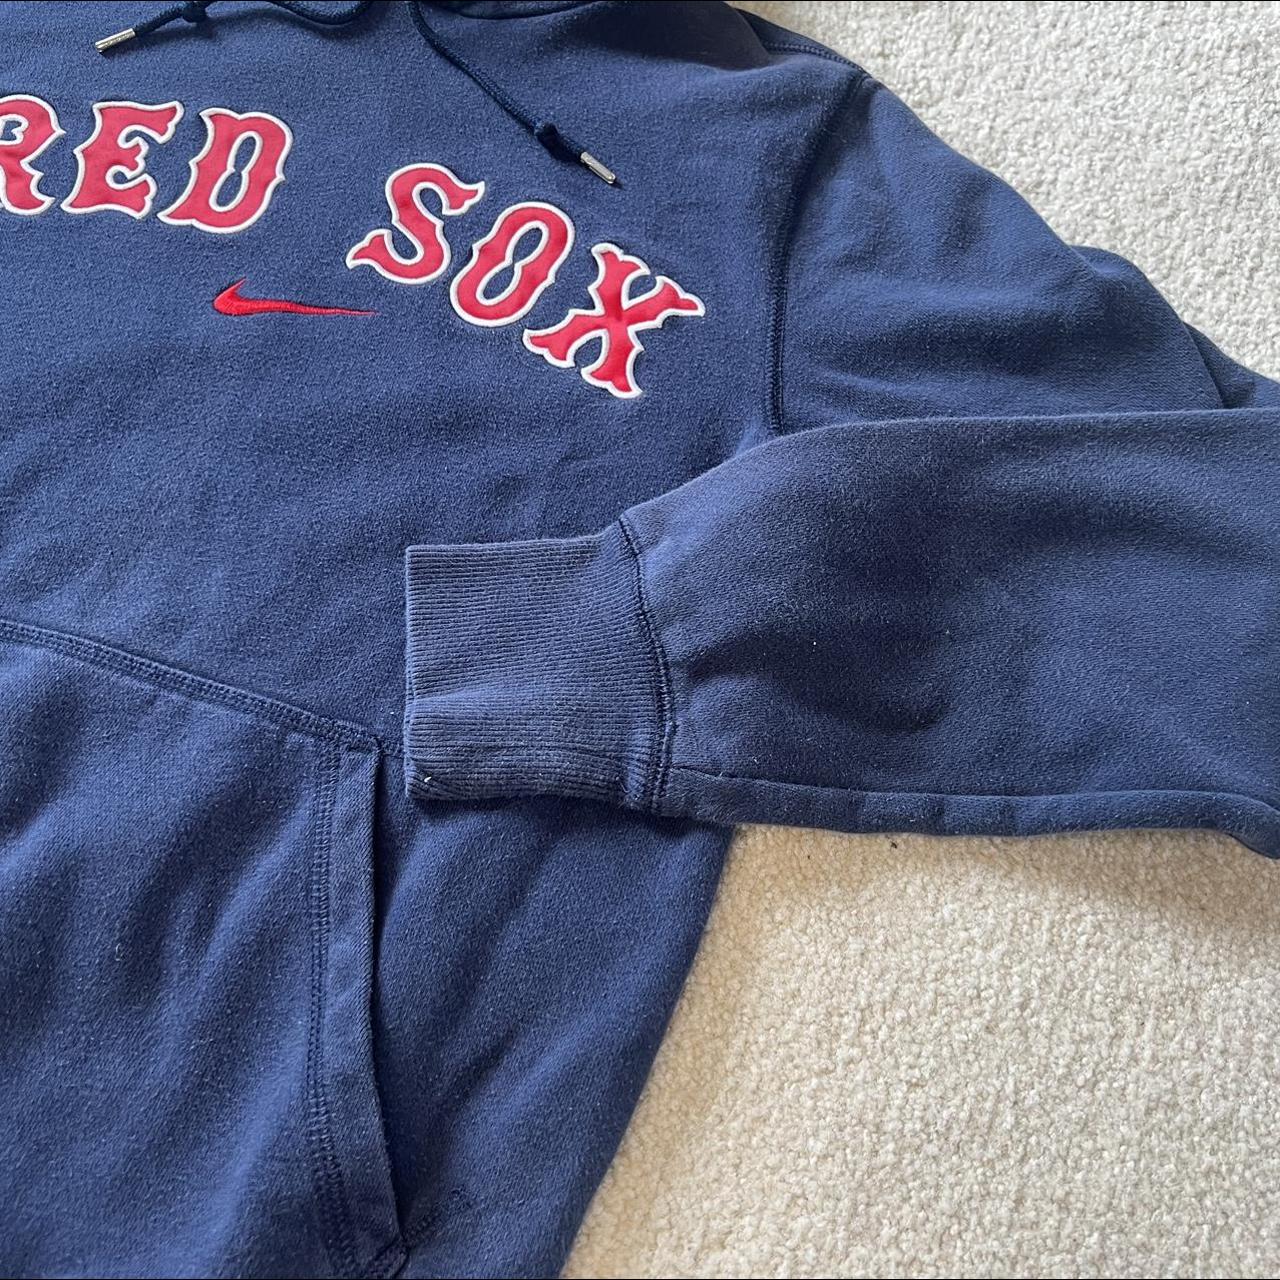 Boston Red Sox Nike Centerswoosh Hoodie. This item - Depop